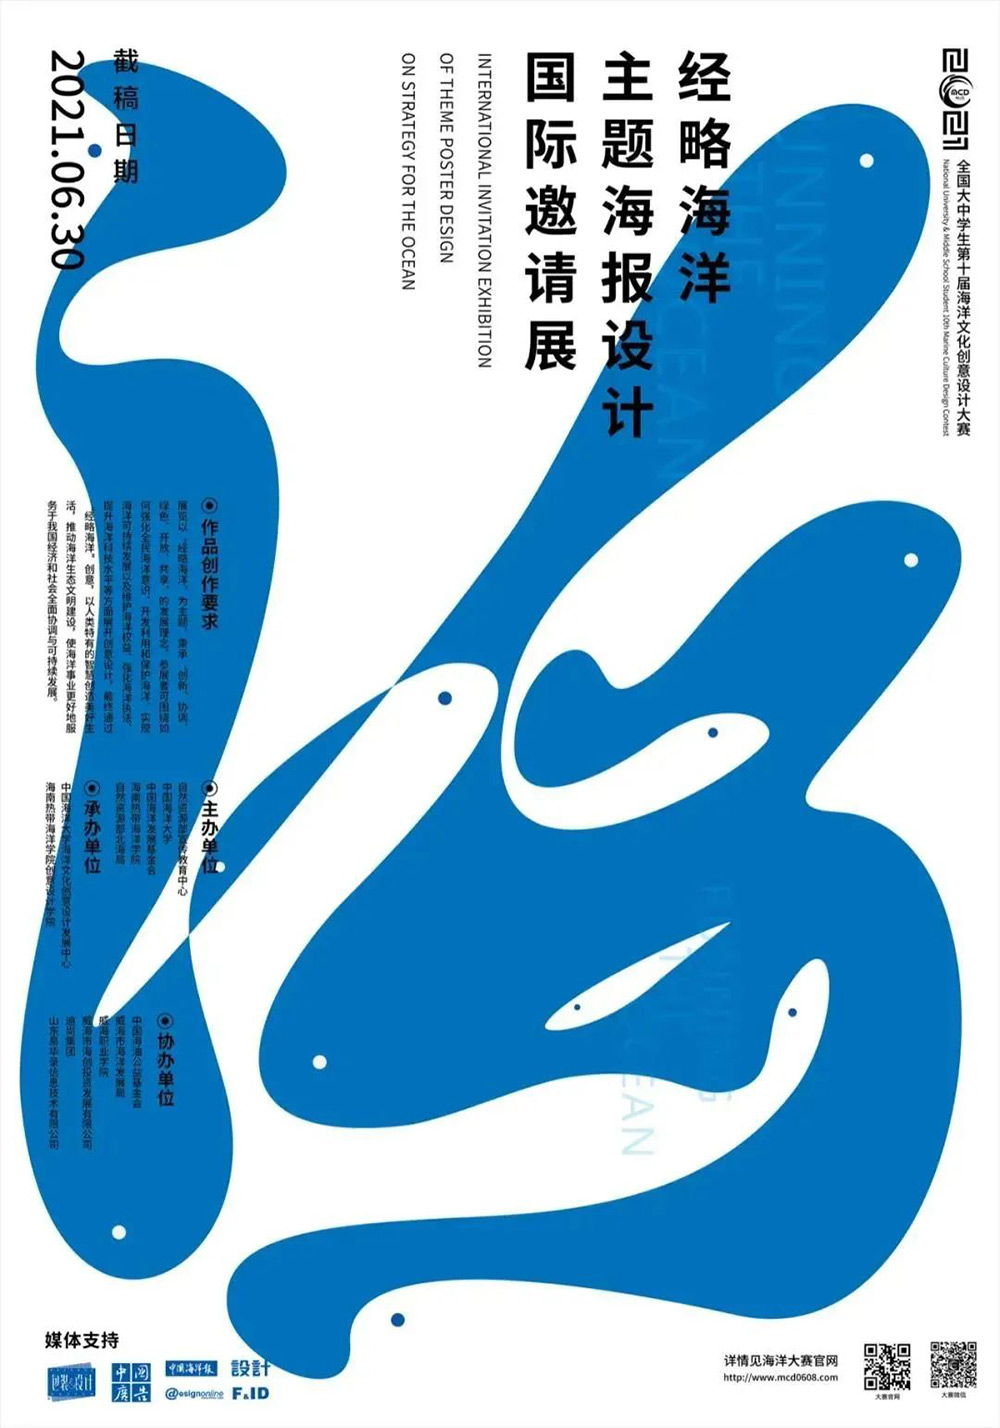 12张优质的中文展览海报